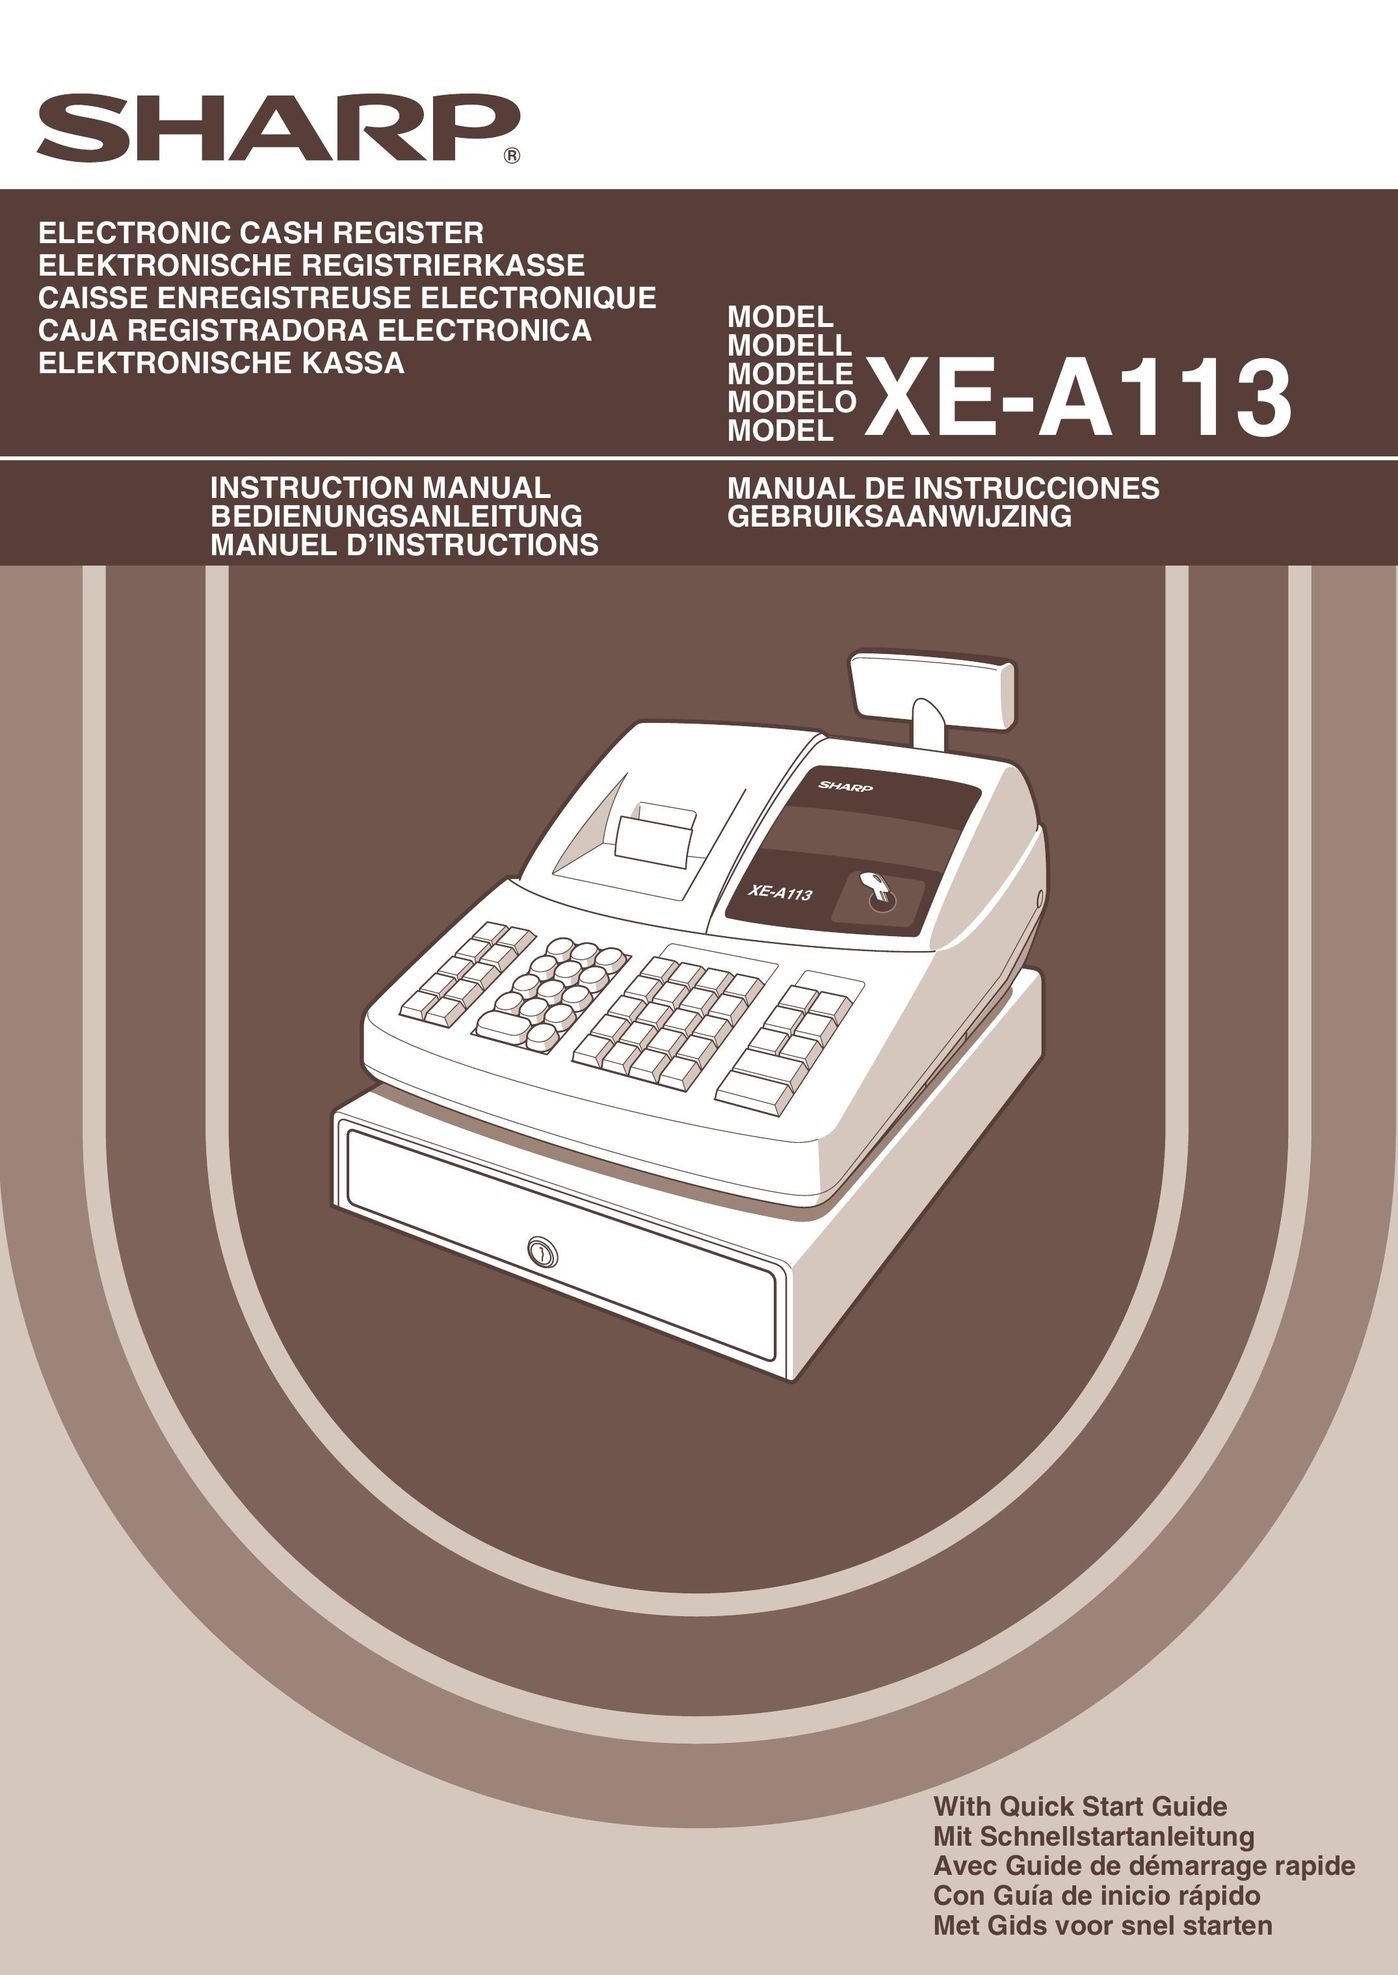 Sharp XE-A113 Cash Register User Manual